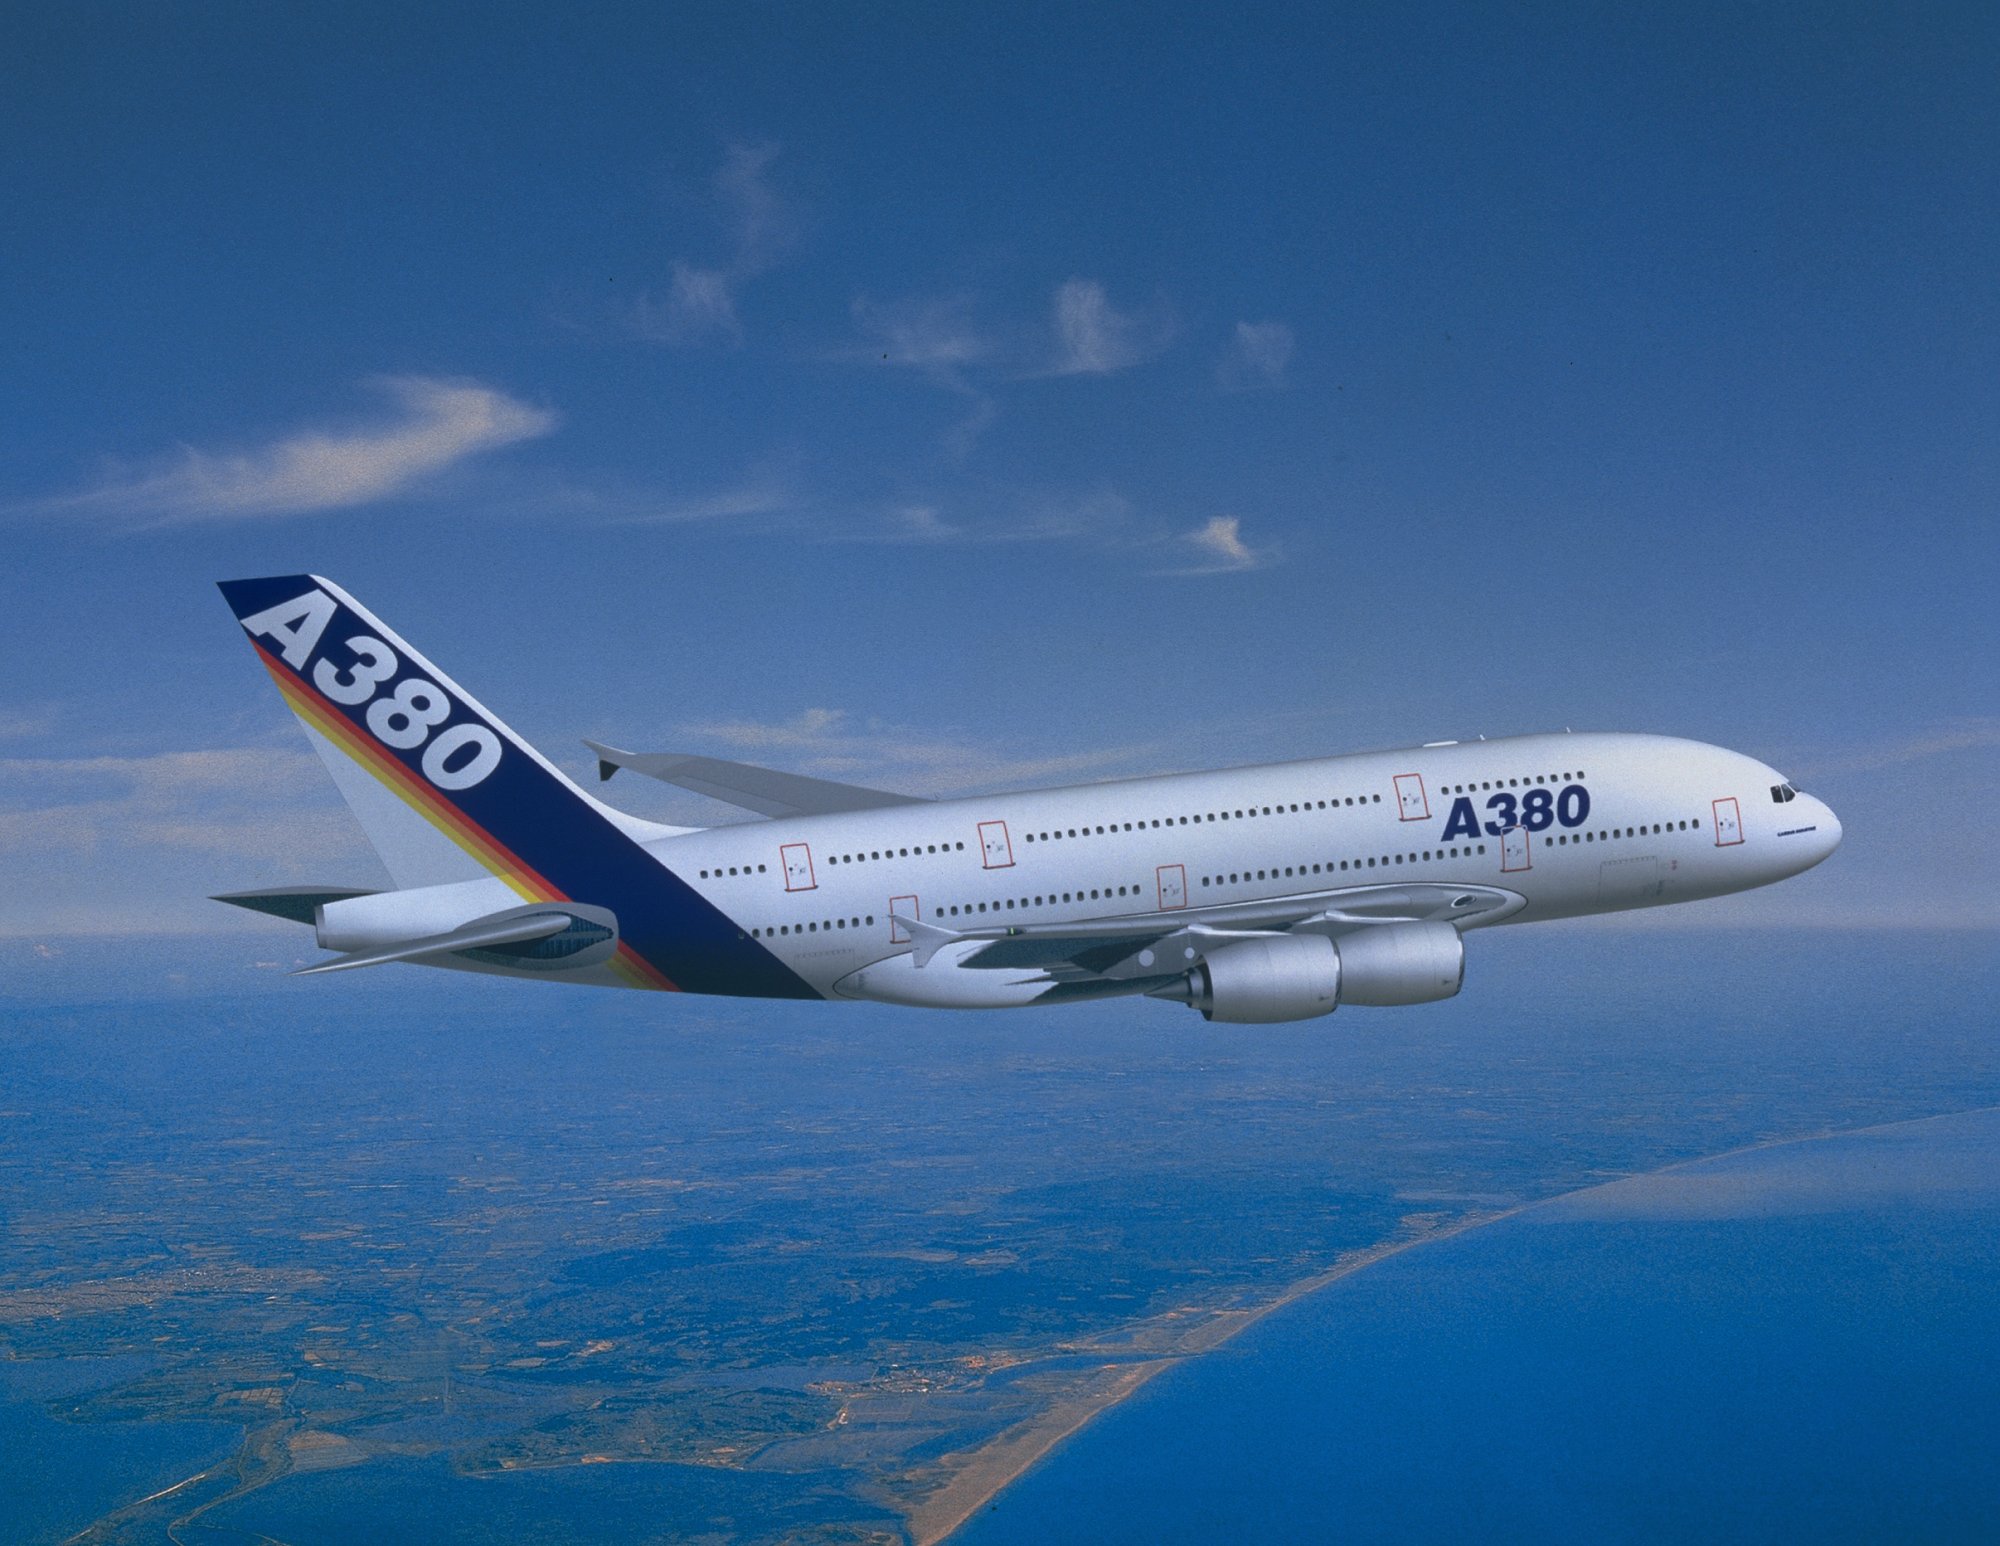 A380airbus.jpg